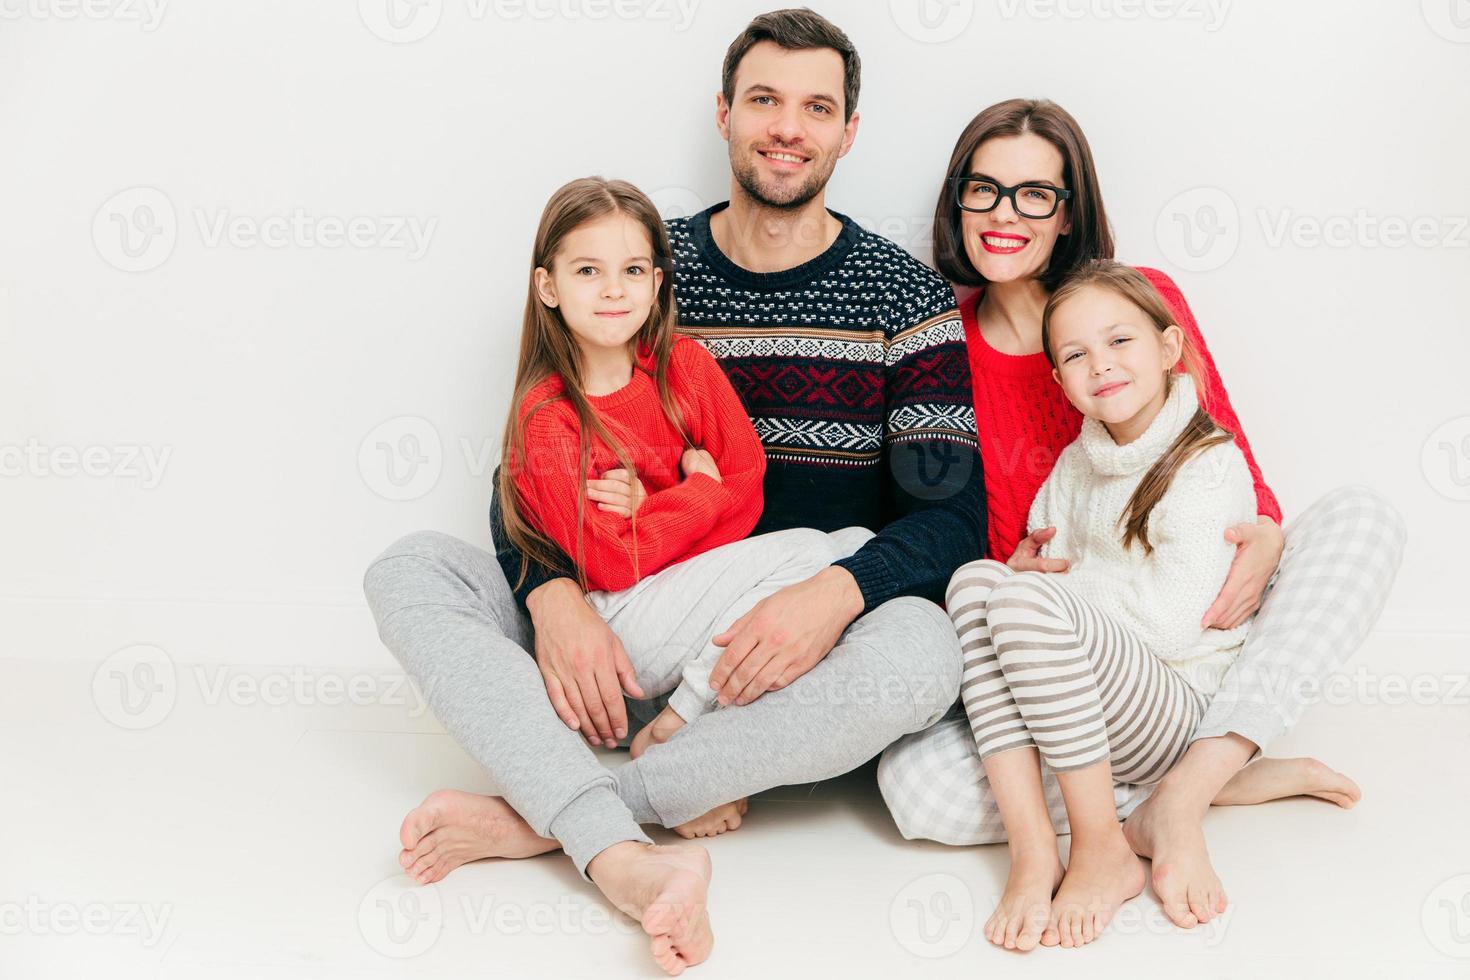 Foto der glücklichen einvernehmlichen Familie posieren alle zusammen vor weißem Hintergrund. freundlich aussehende mutter, vater und ihre beiden töchter sitzen auf dem boden, haben freudige gesichtsausdrücke. zusammengehörigkeitskonzept